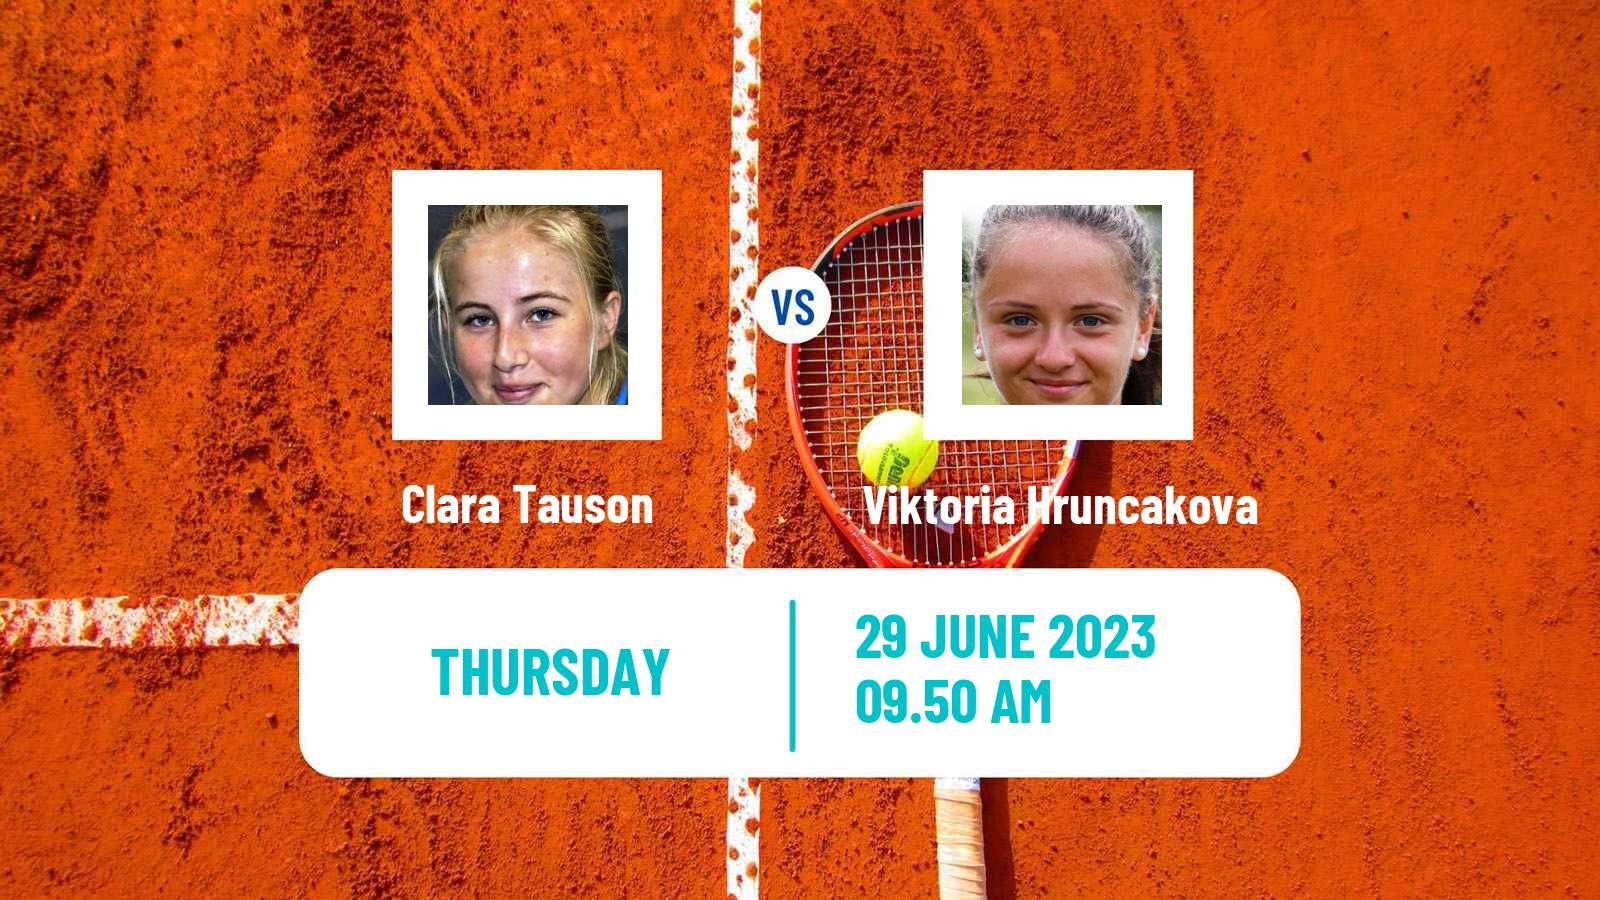 Tennis WTA Wimbledon Clara Tauson - Viktoria Hruncakova